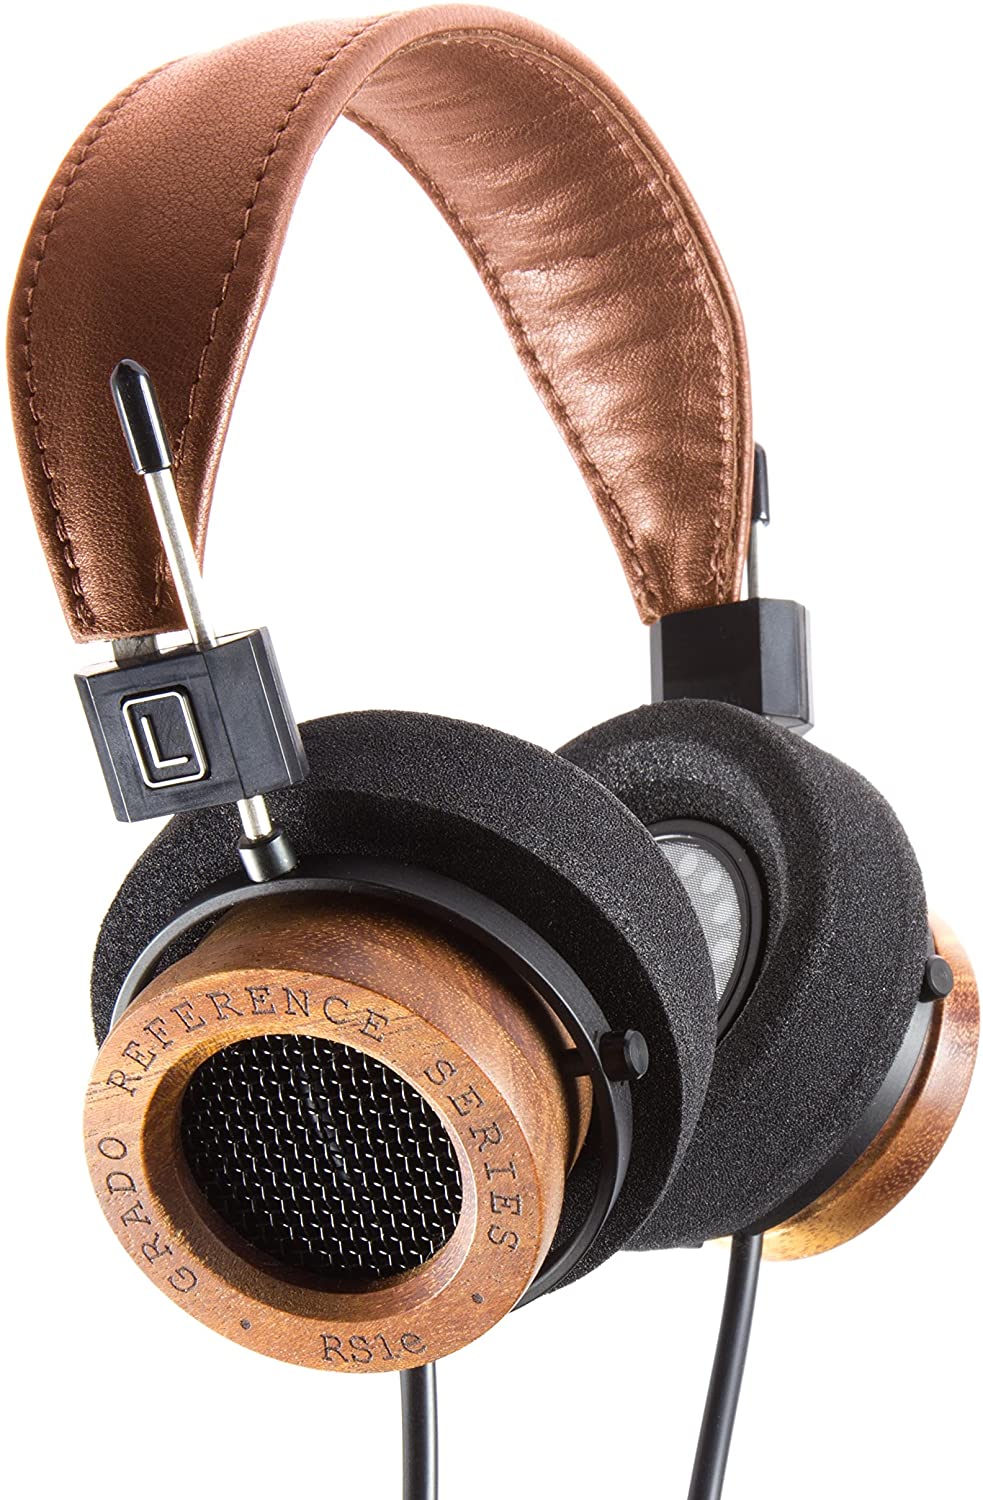 Grado Reference Series RS1e Headphones